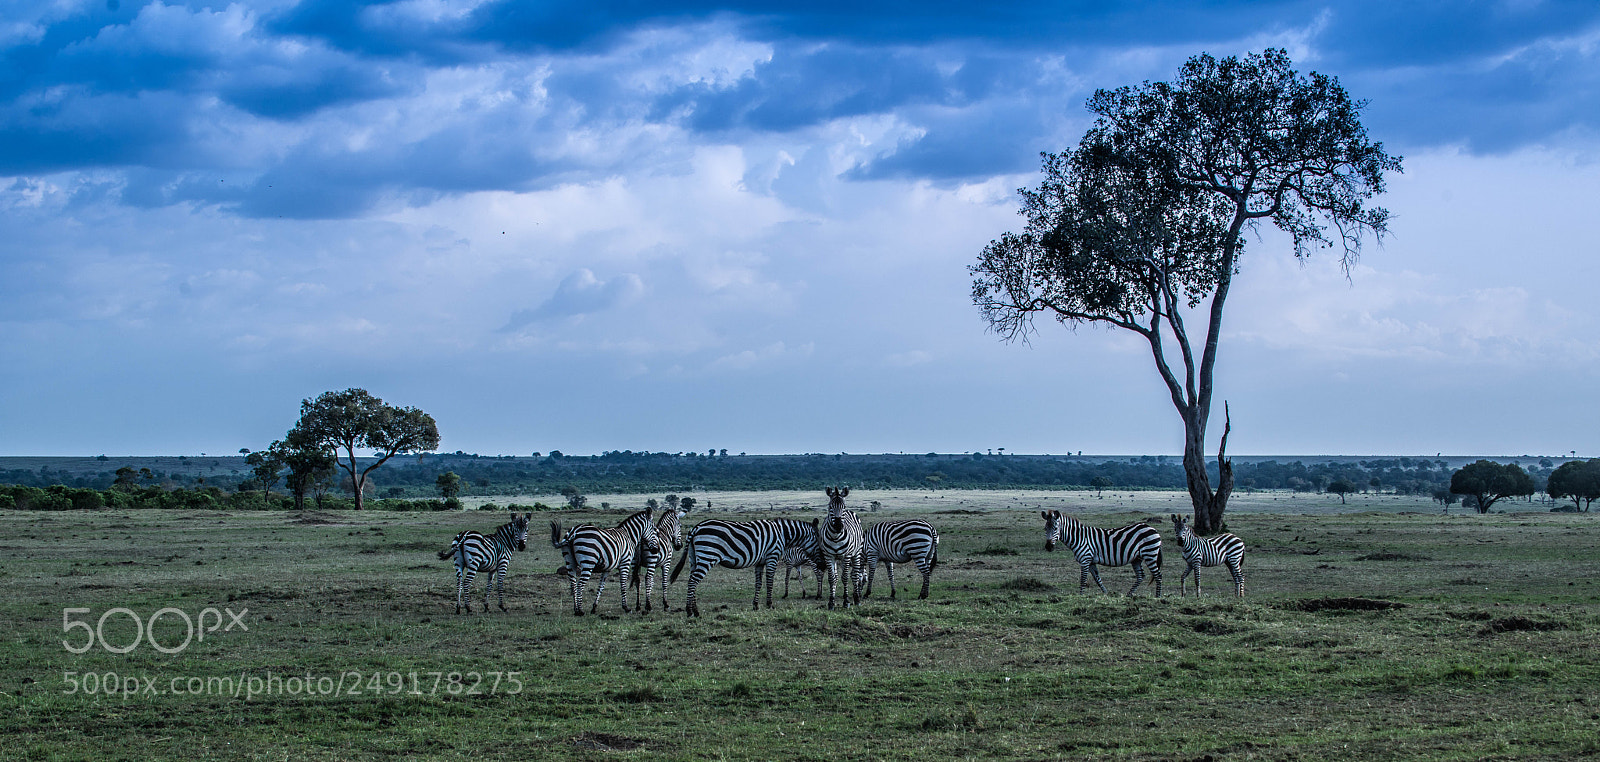 Nikon D800E sample photo. A herd of zebras photography